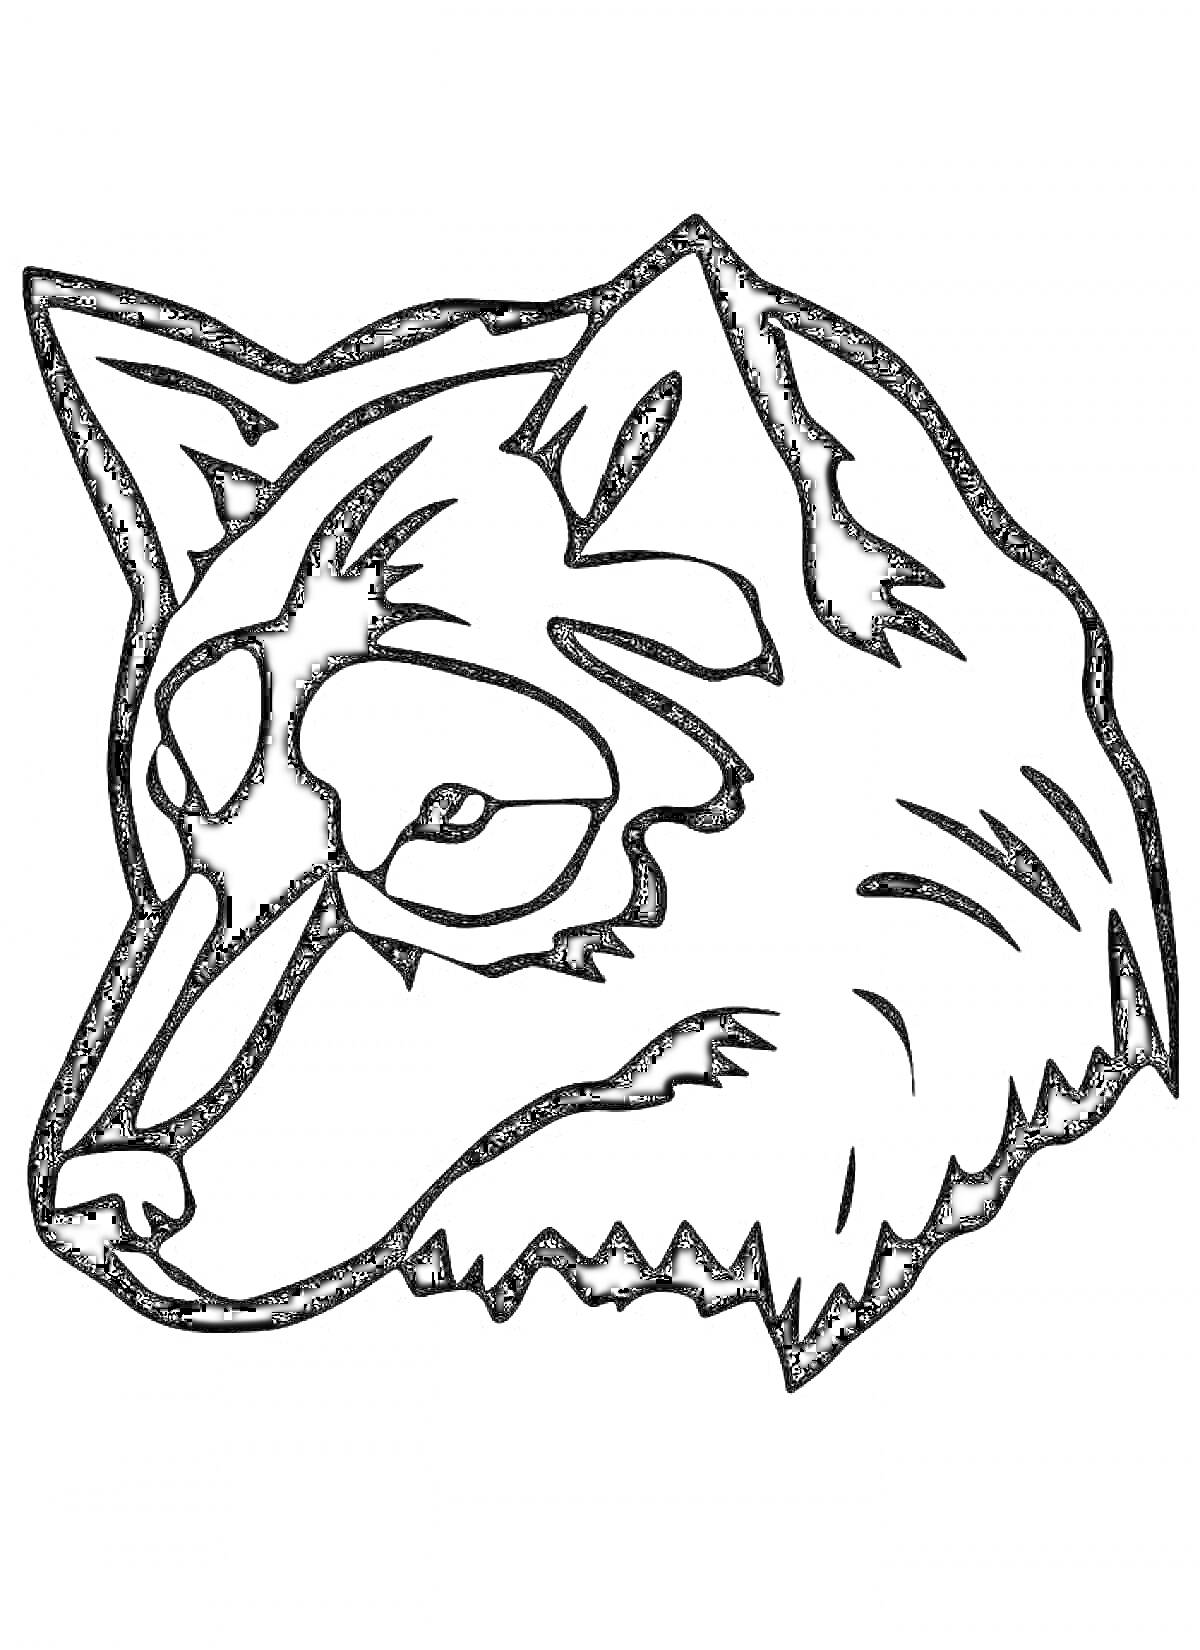 Раскраска Голова волка, смотрящего влево, с видимыми ушами, глазами, носом и деталями меха